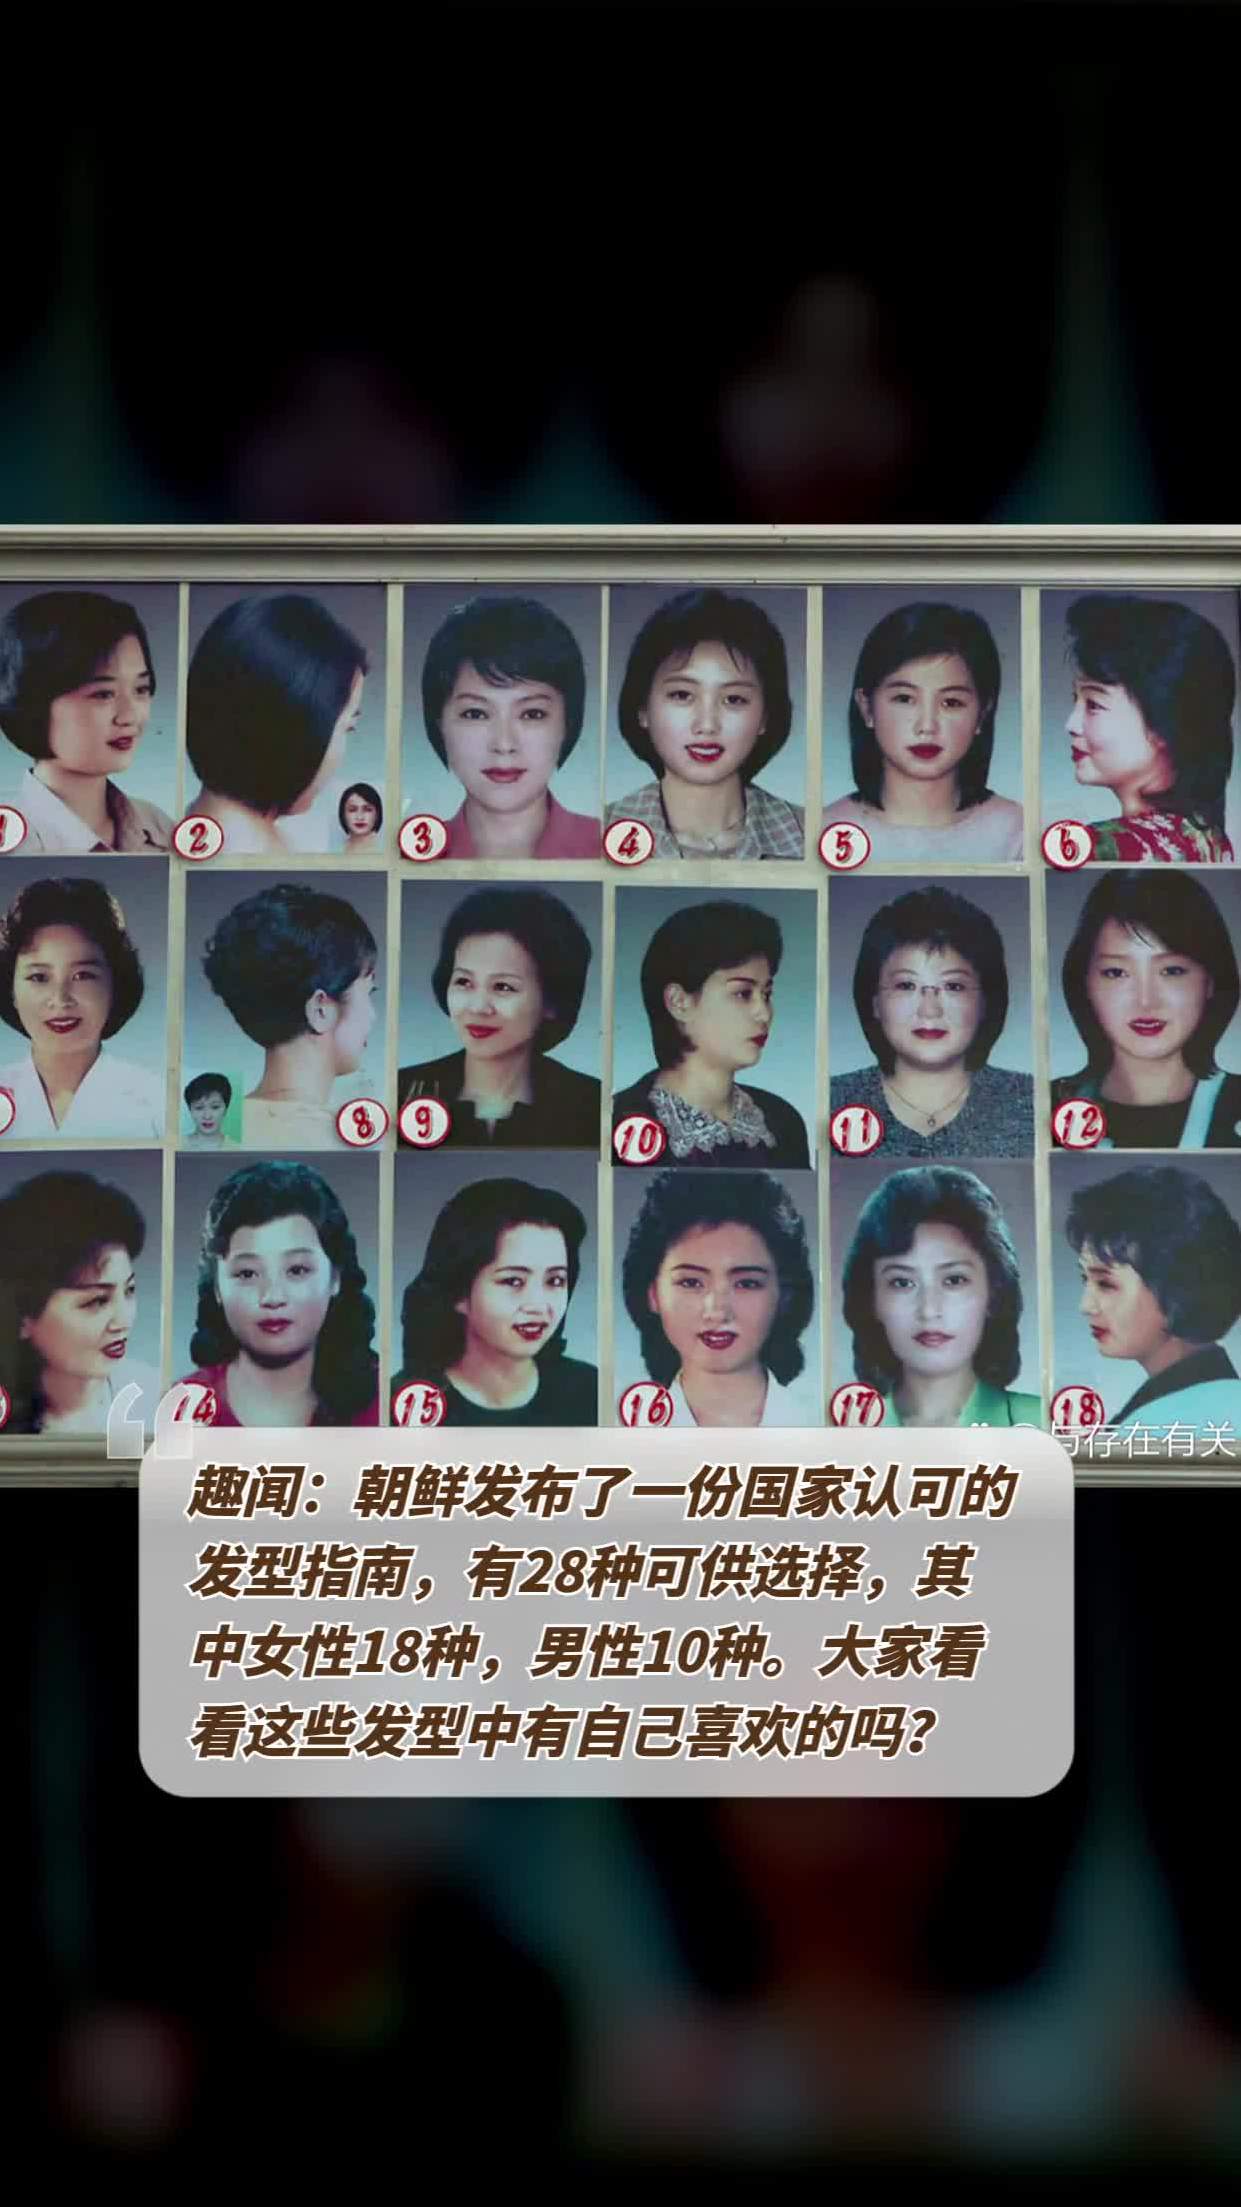 趣闻:朝鲜发布了一份国家认可的发型指南,有28种可供选择,其中女性18